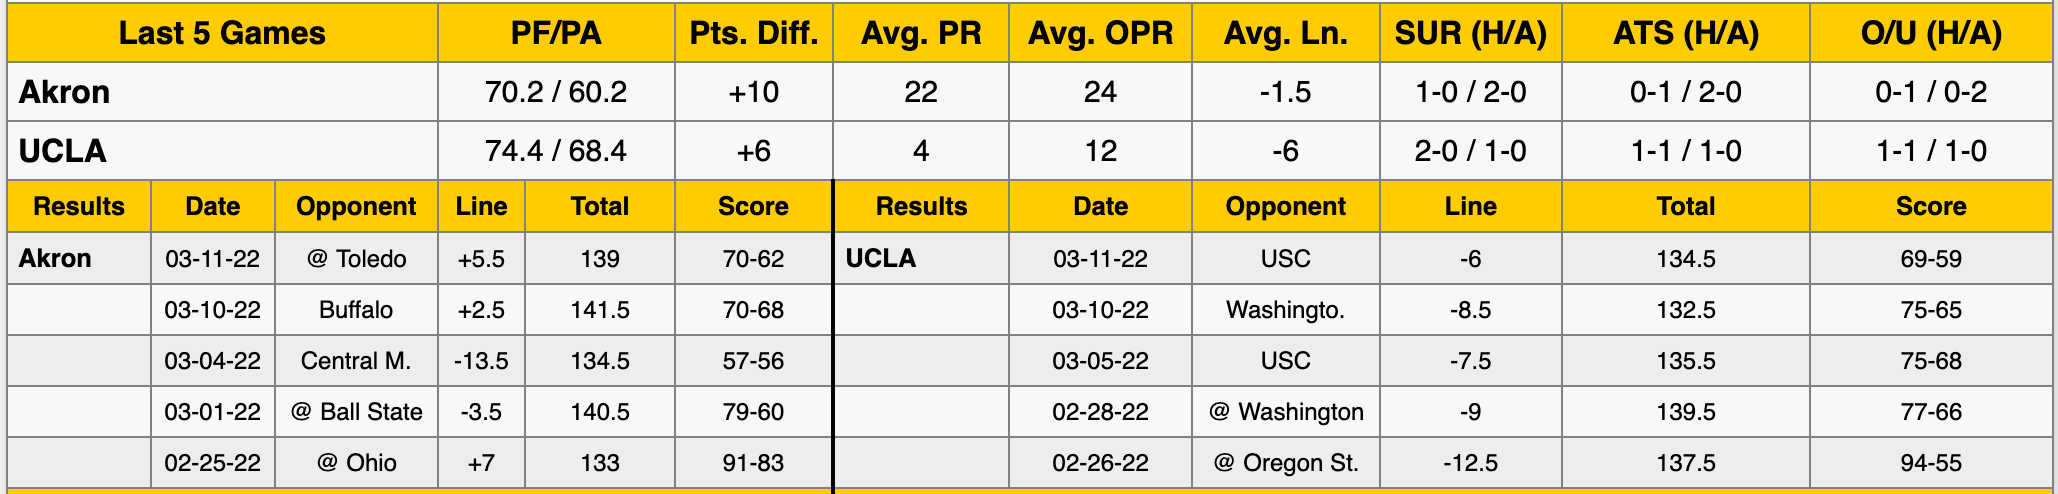 UCLA vs Akron Data